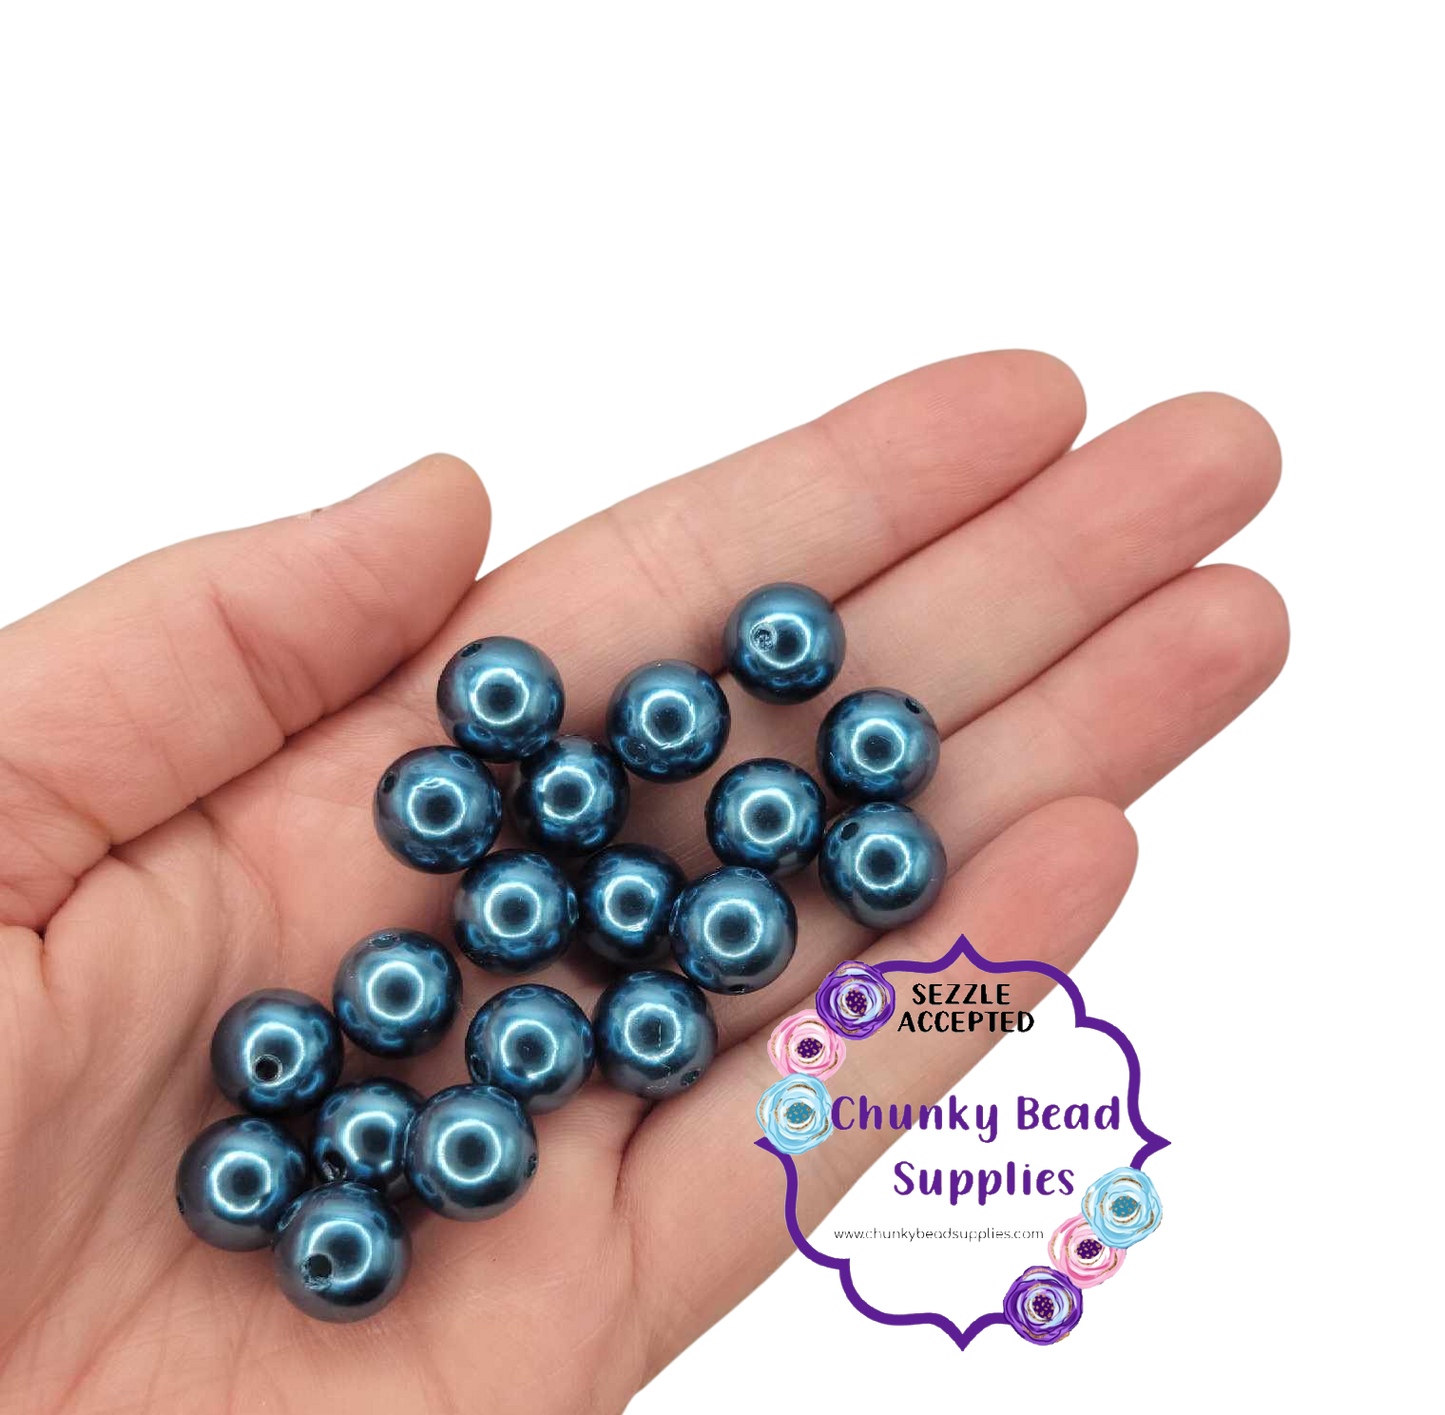 Perlas acrílicas "azul verdoso" de 12 mm